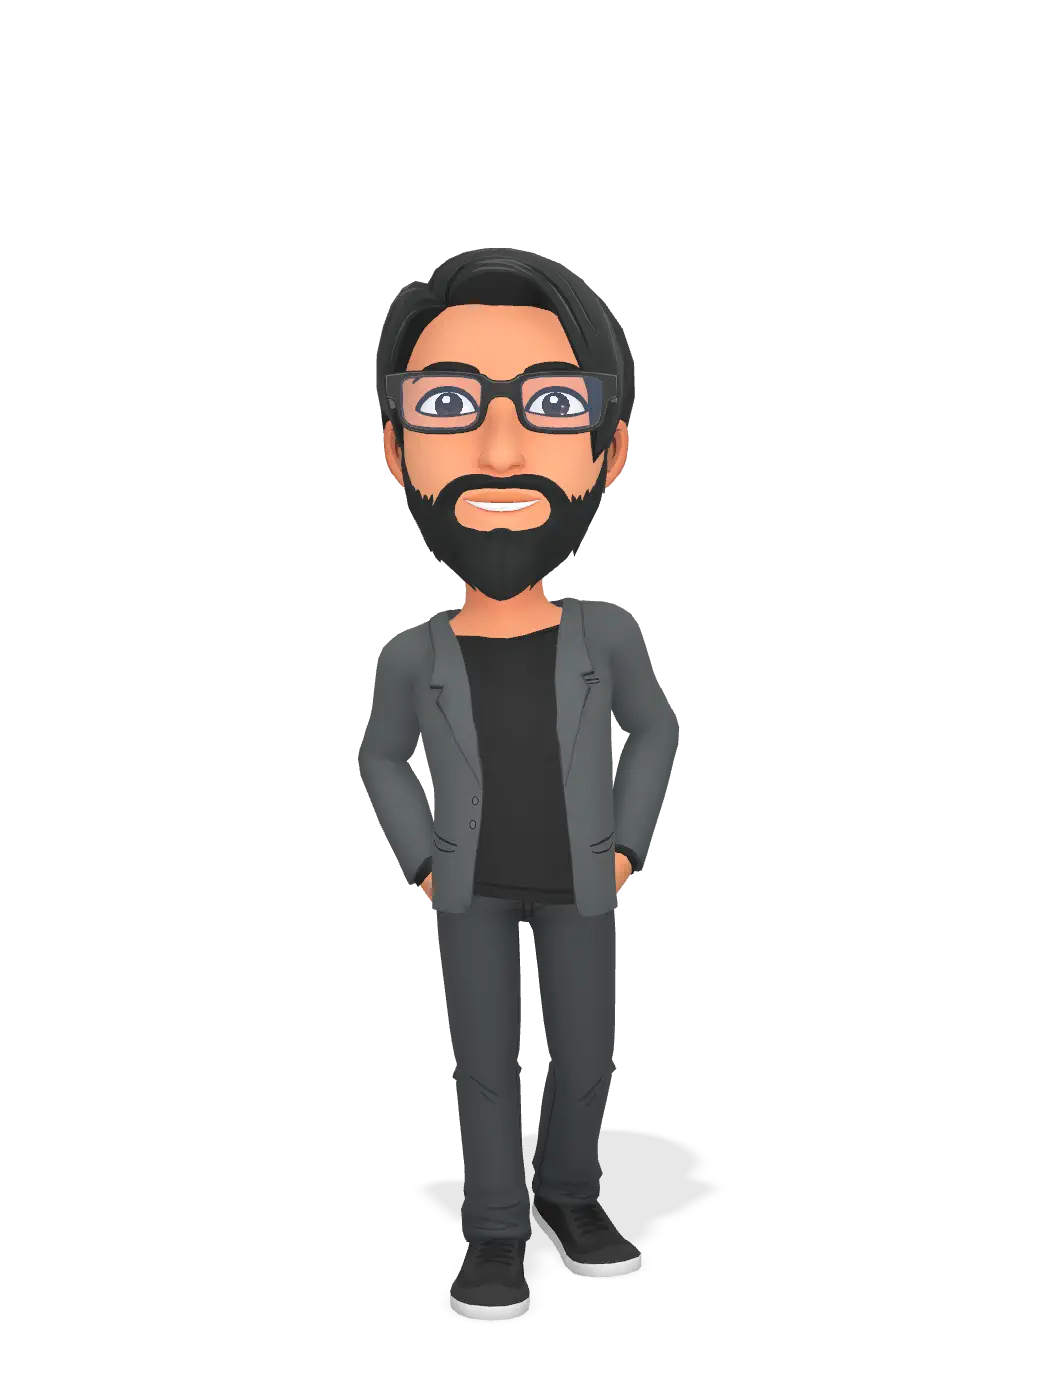 3D Bitmoji for skollimarla avatar